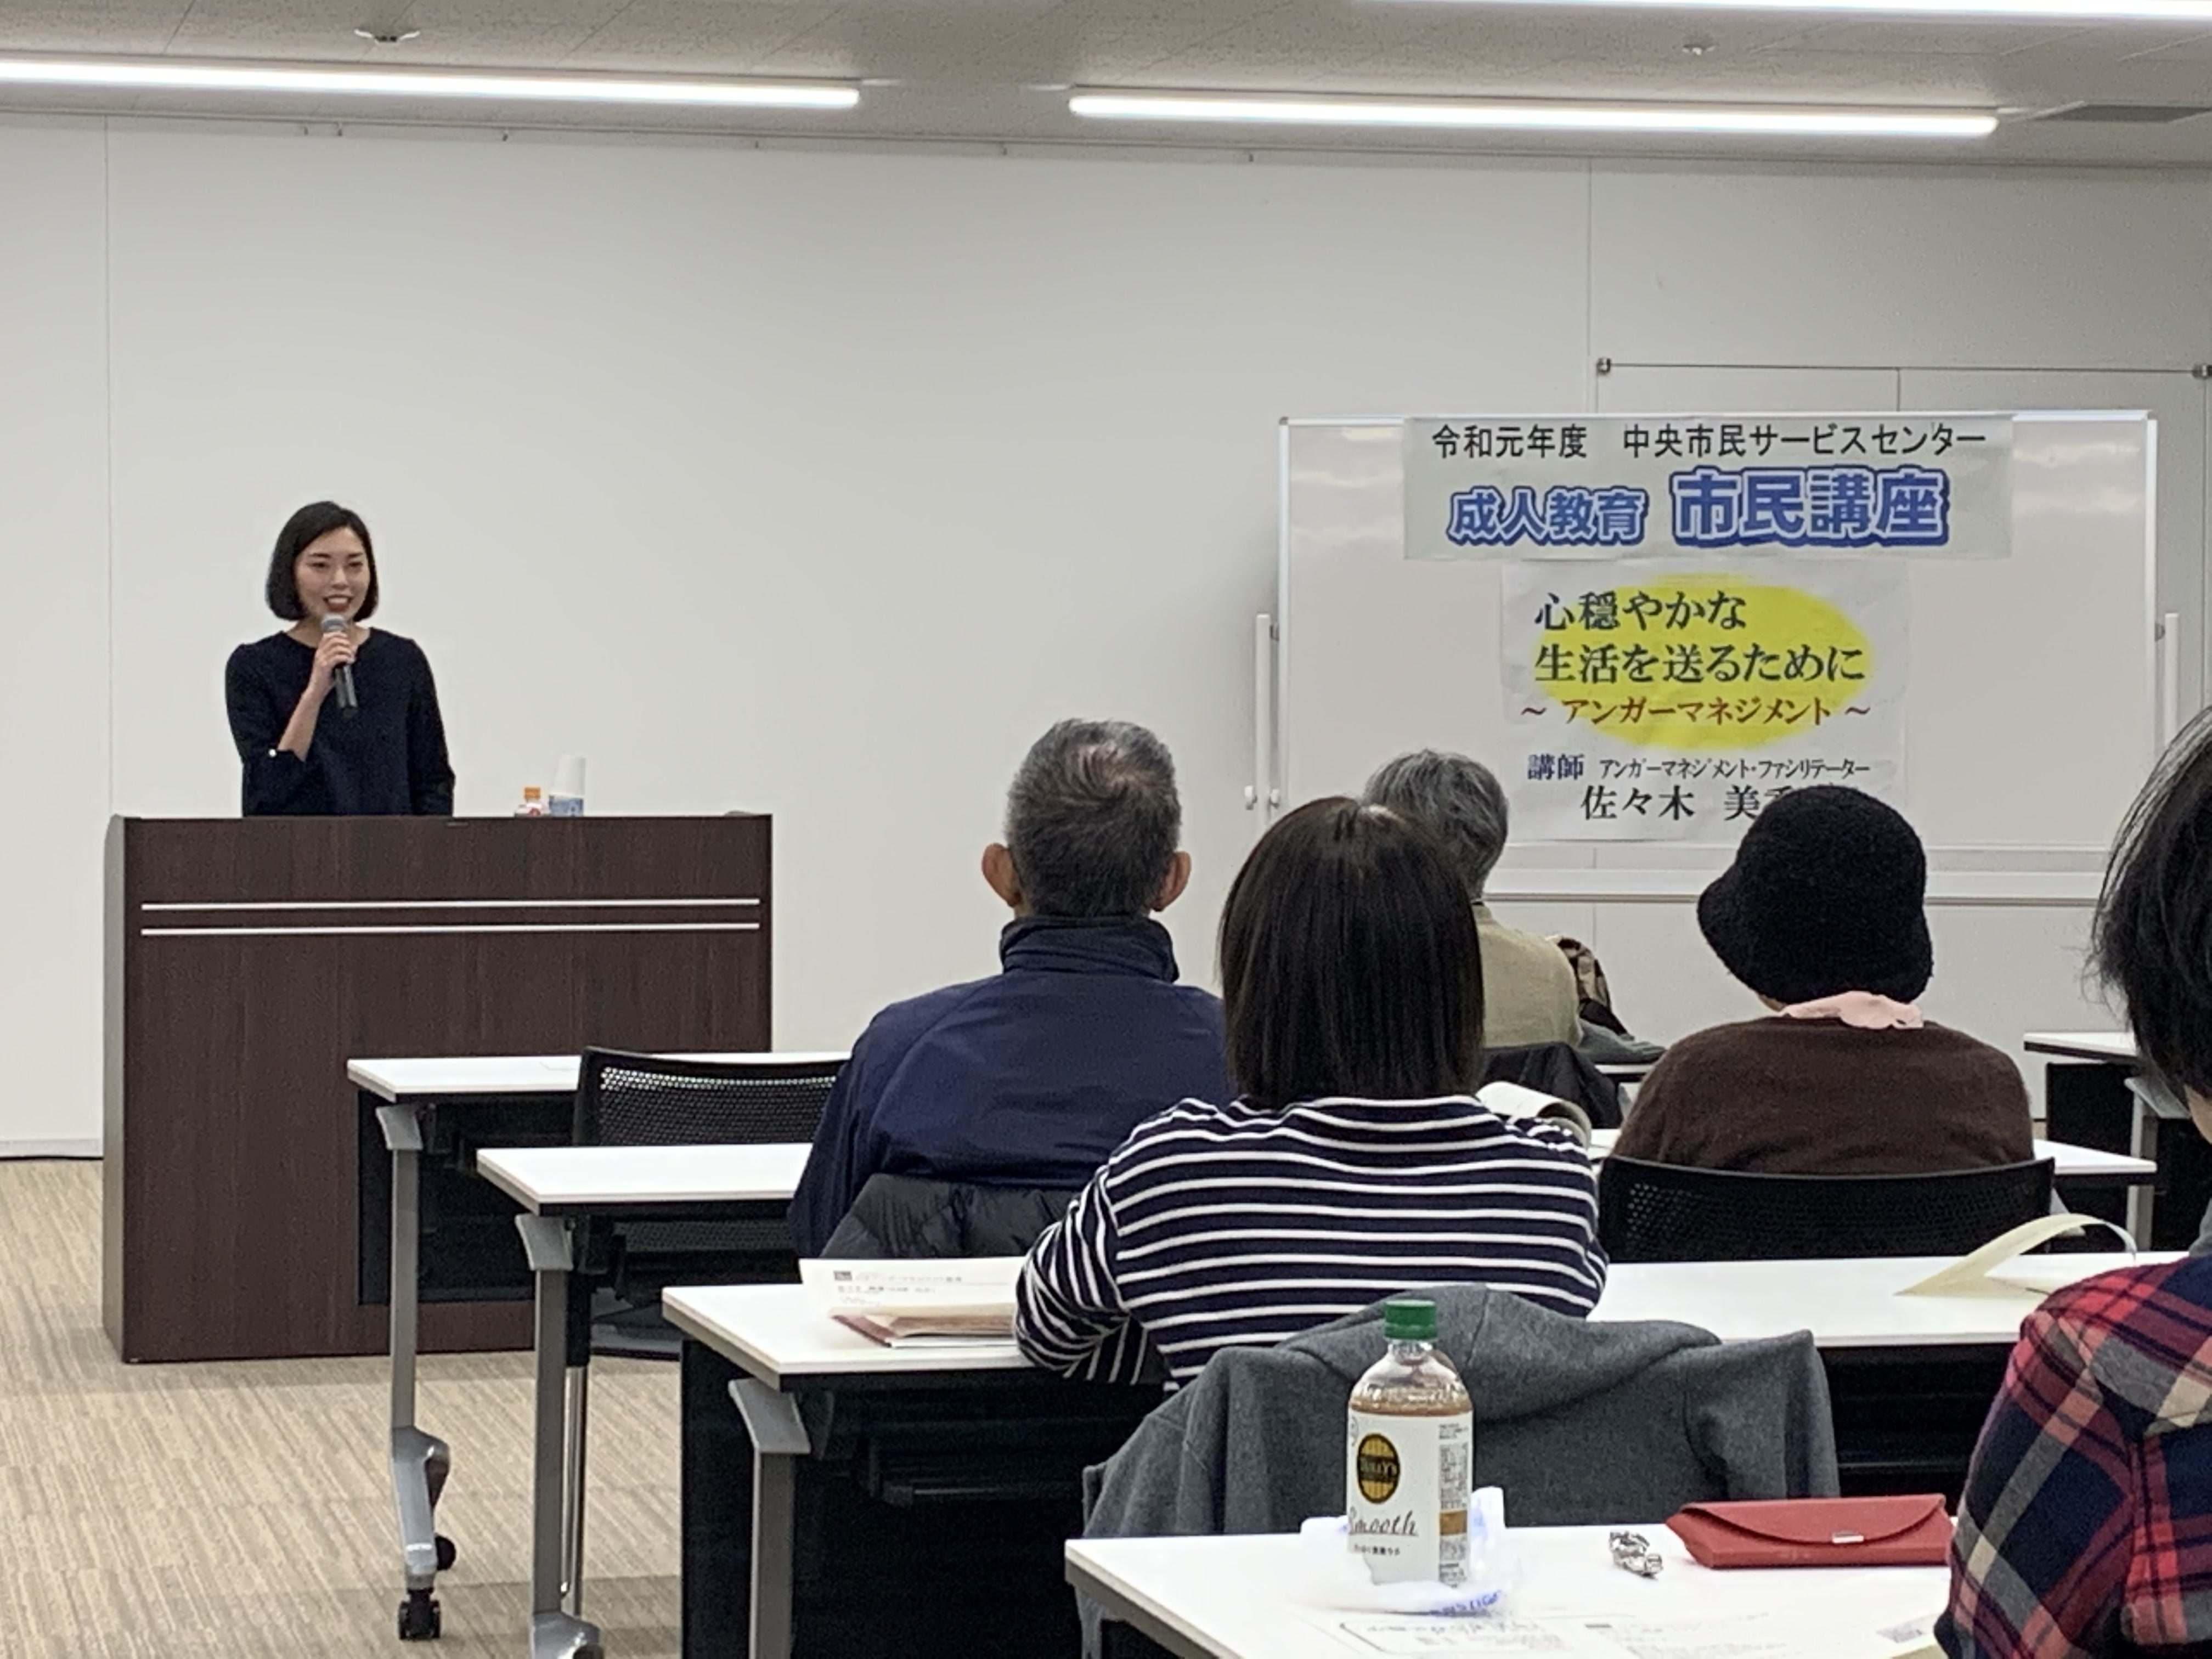 秋田市民講座でアンガーマネジメントの話をしました 12 5 あきたこまちネットの研修 セミナー